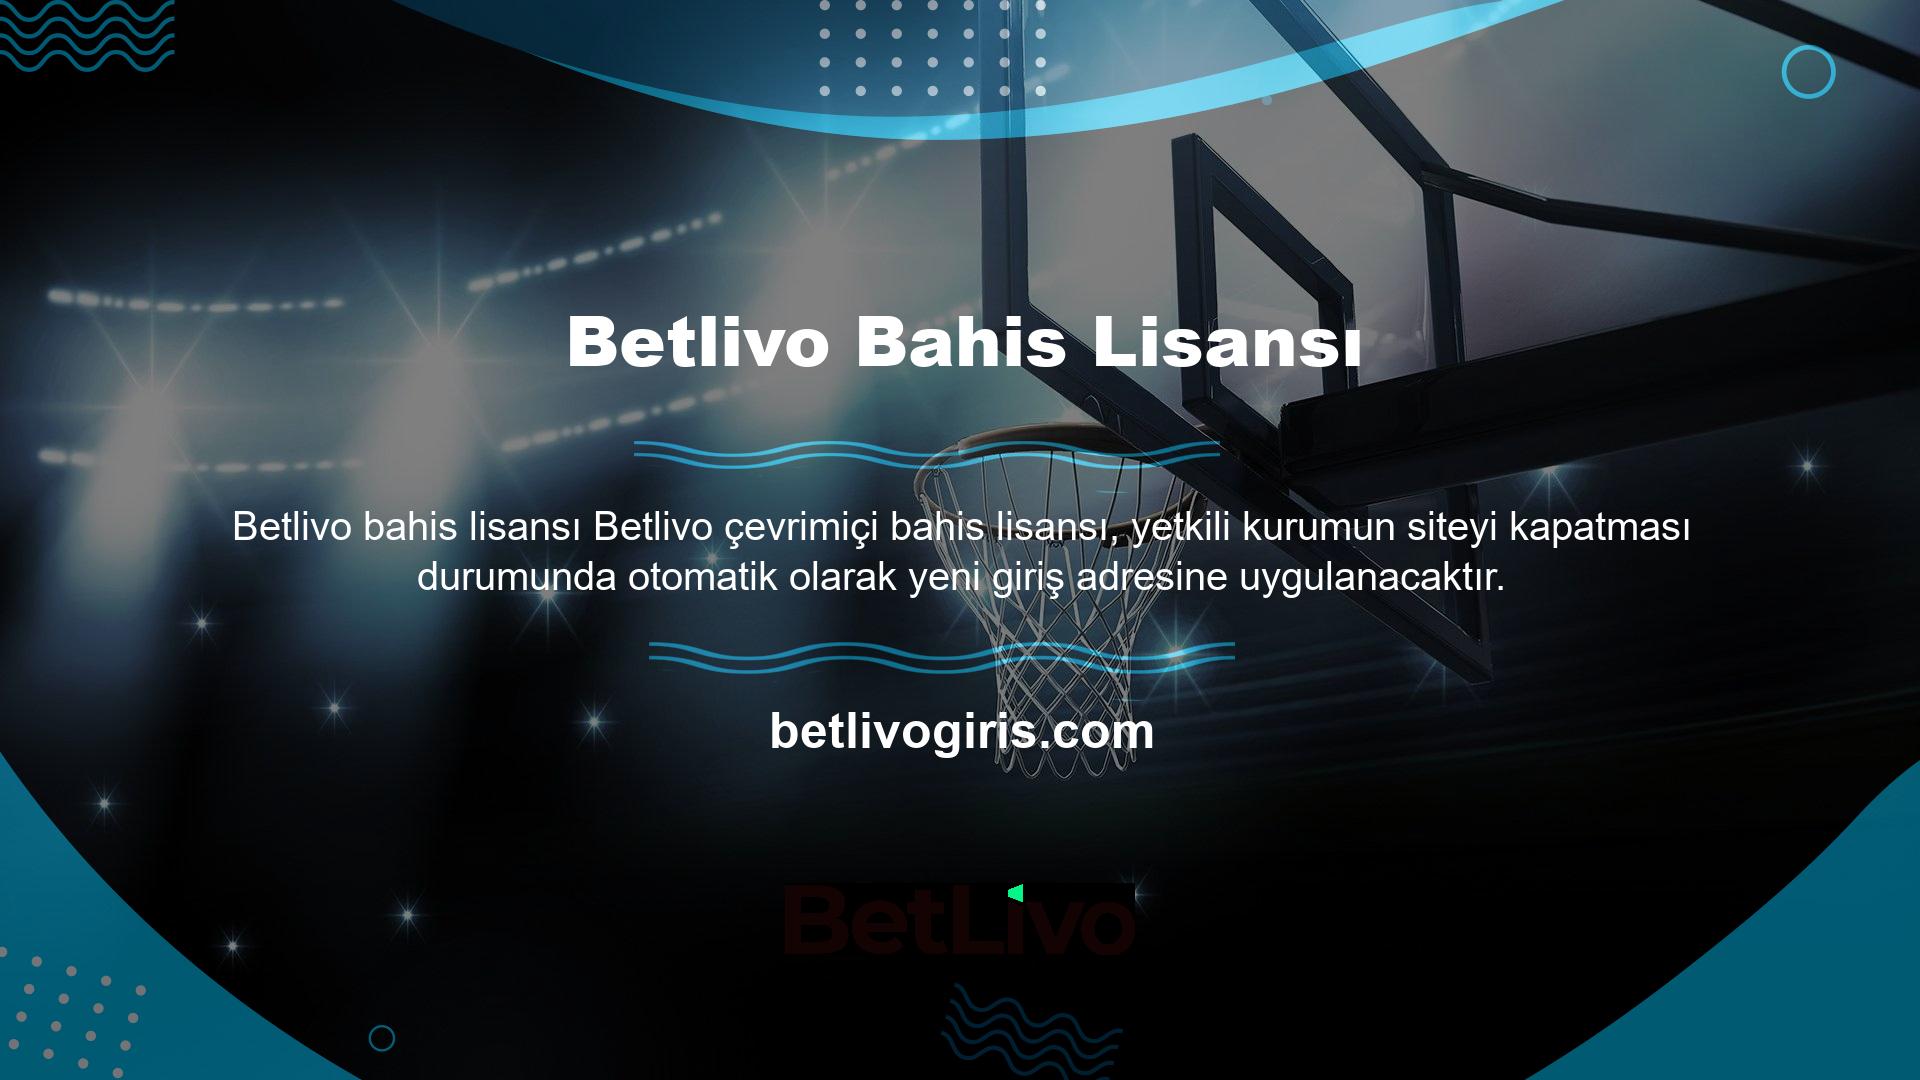 Betlivo çevrimiçi casino sitesinin kontrolü her zaman web yöneticisinin elindedir